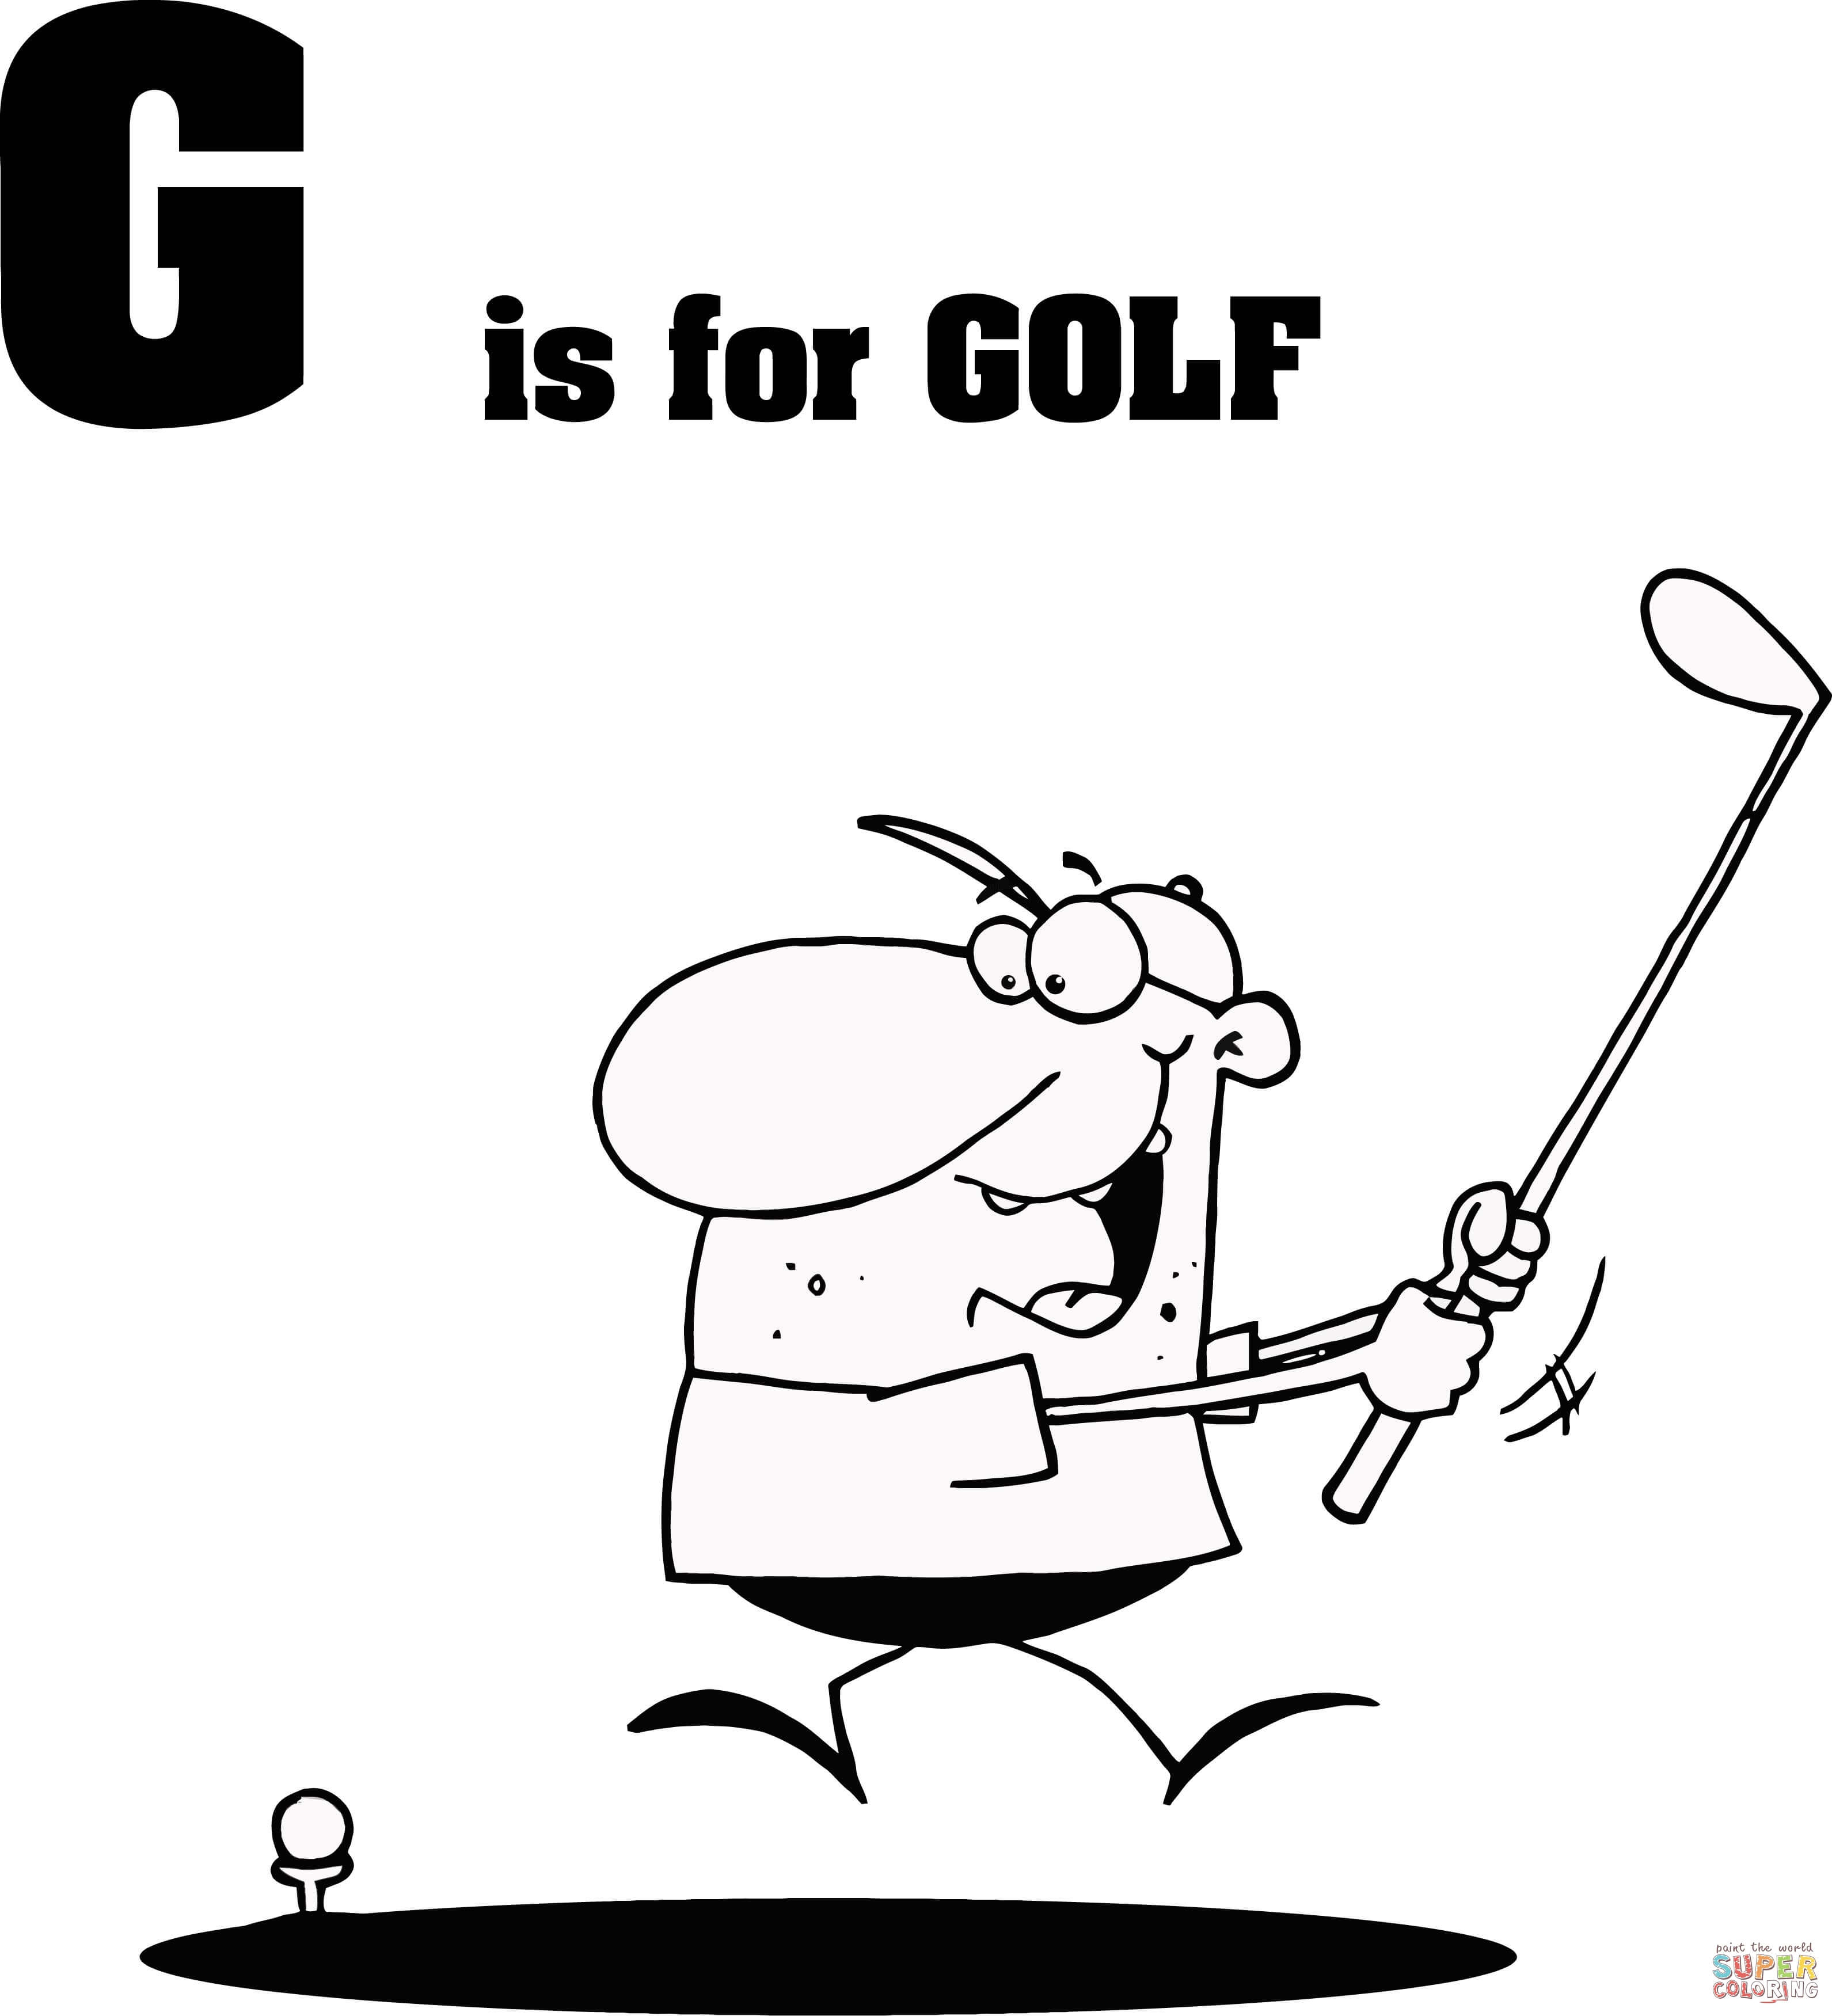 Buchstabe G steht für Golf aus Buchstabe G